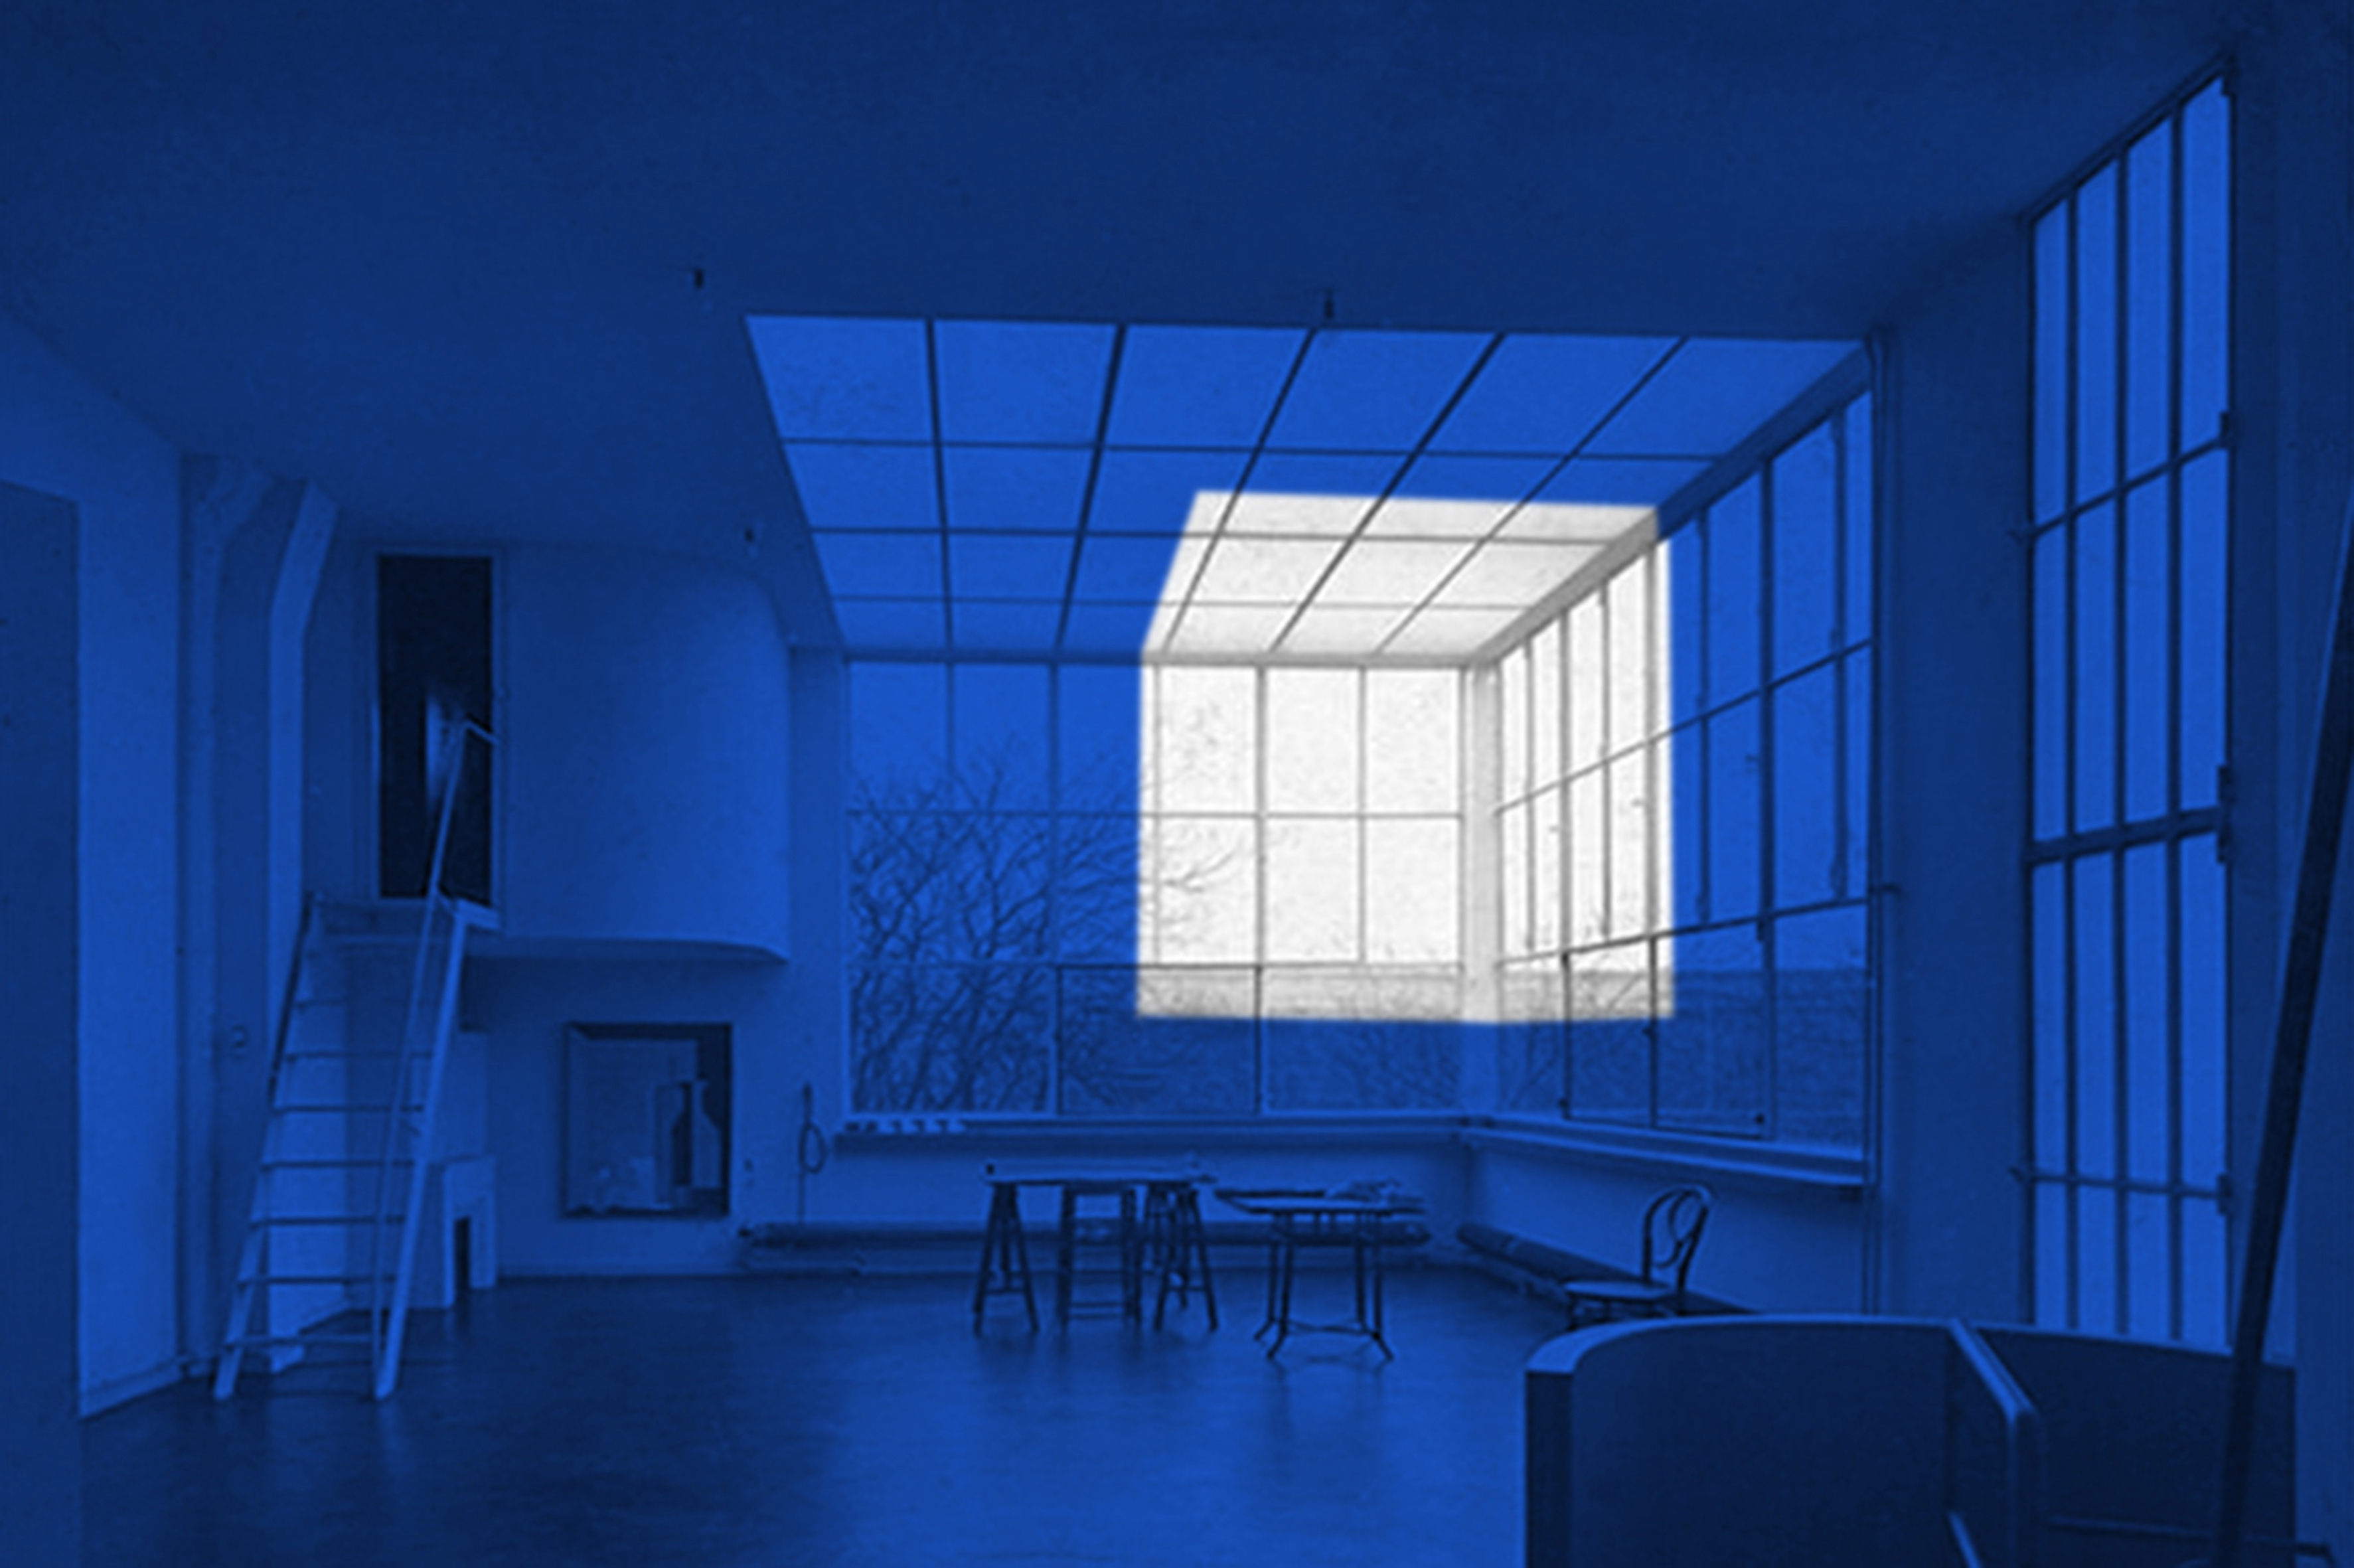 'הסטודיו - הסטודיו-בית של אוזנפנט, לה קורבוזיה, פריז, 1922', דוריאן גוטליב, 2016